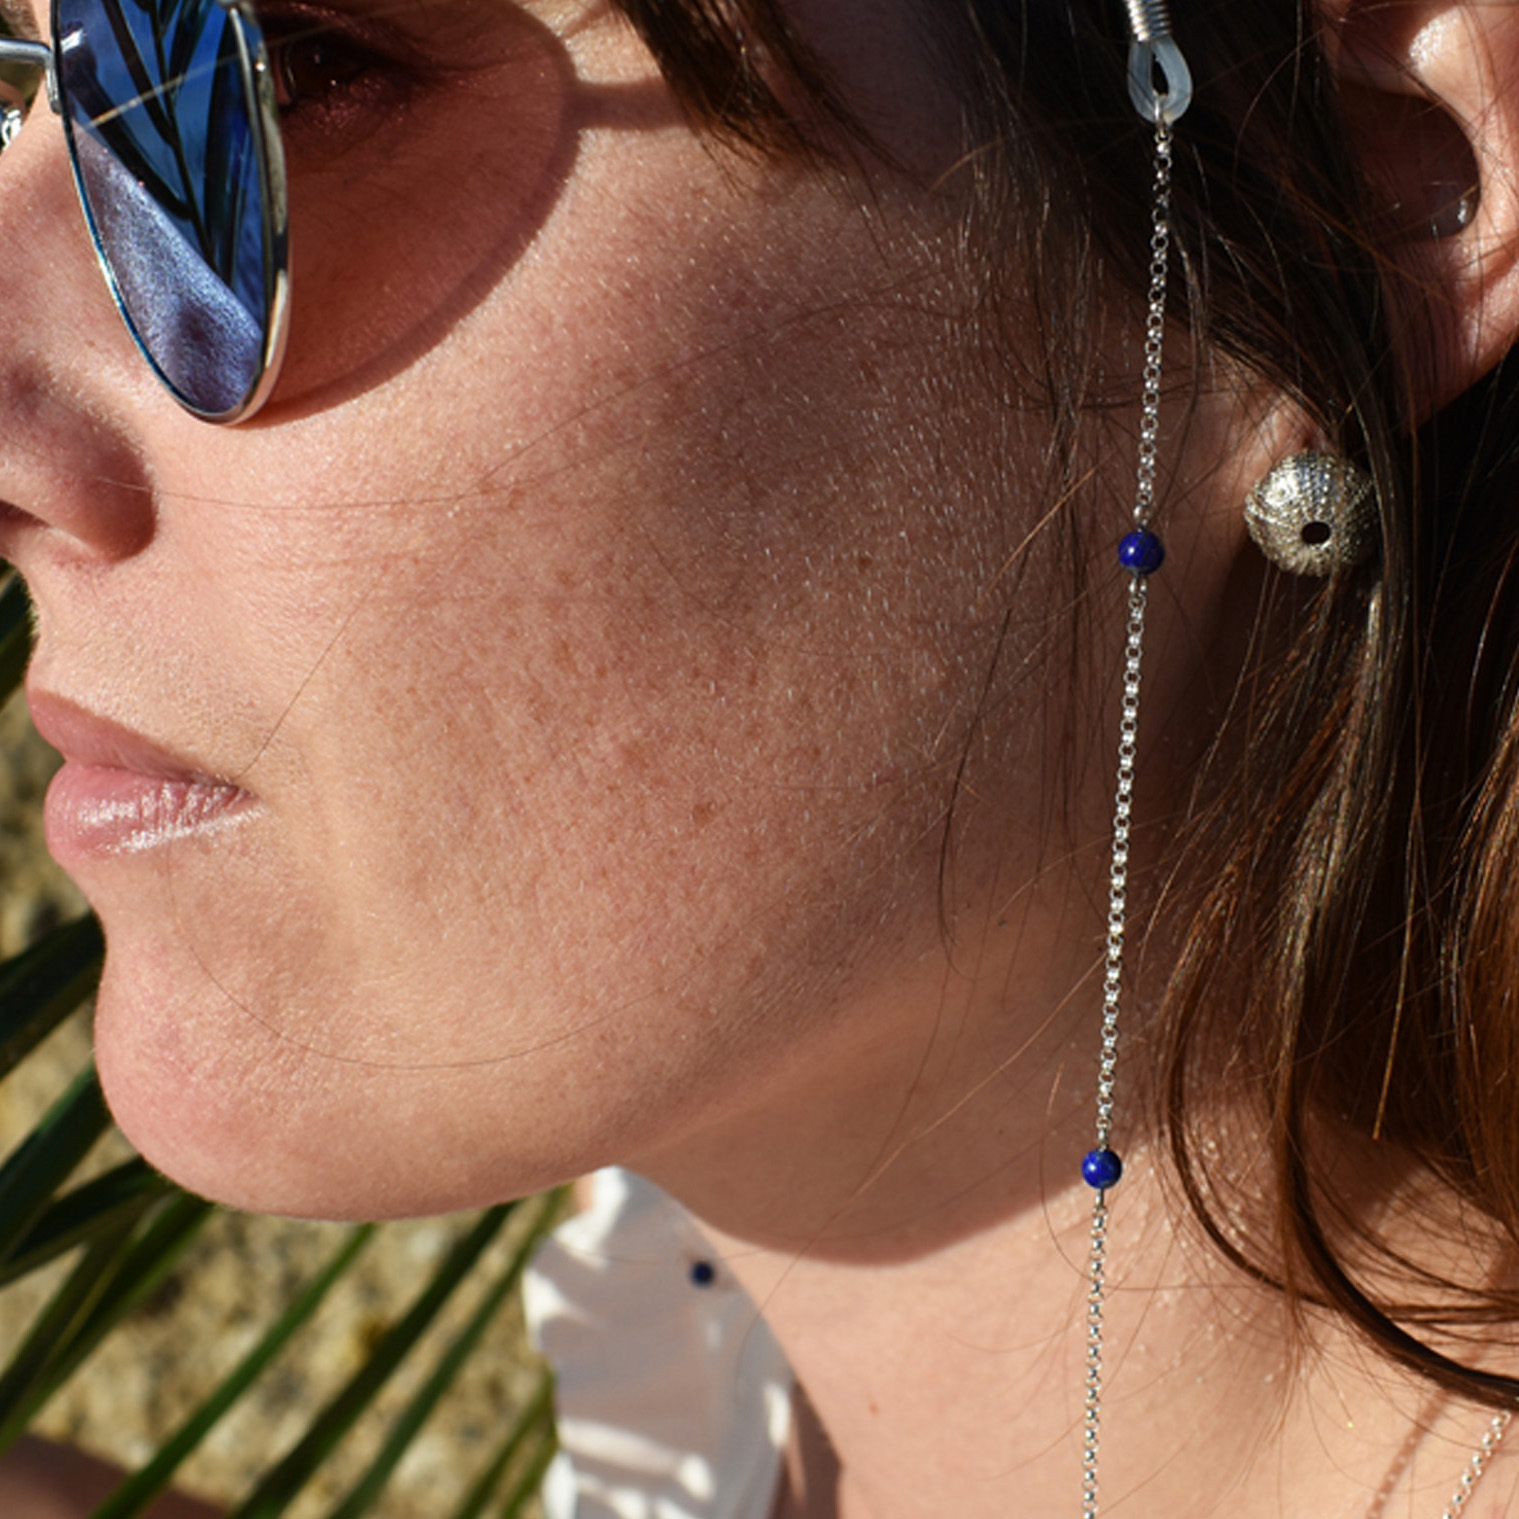 Silver Lapis Lazuli Sunglasses Chain